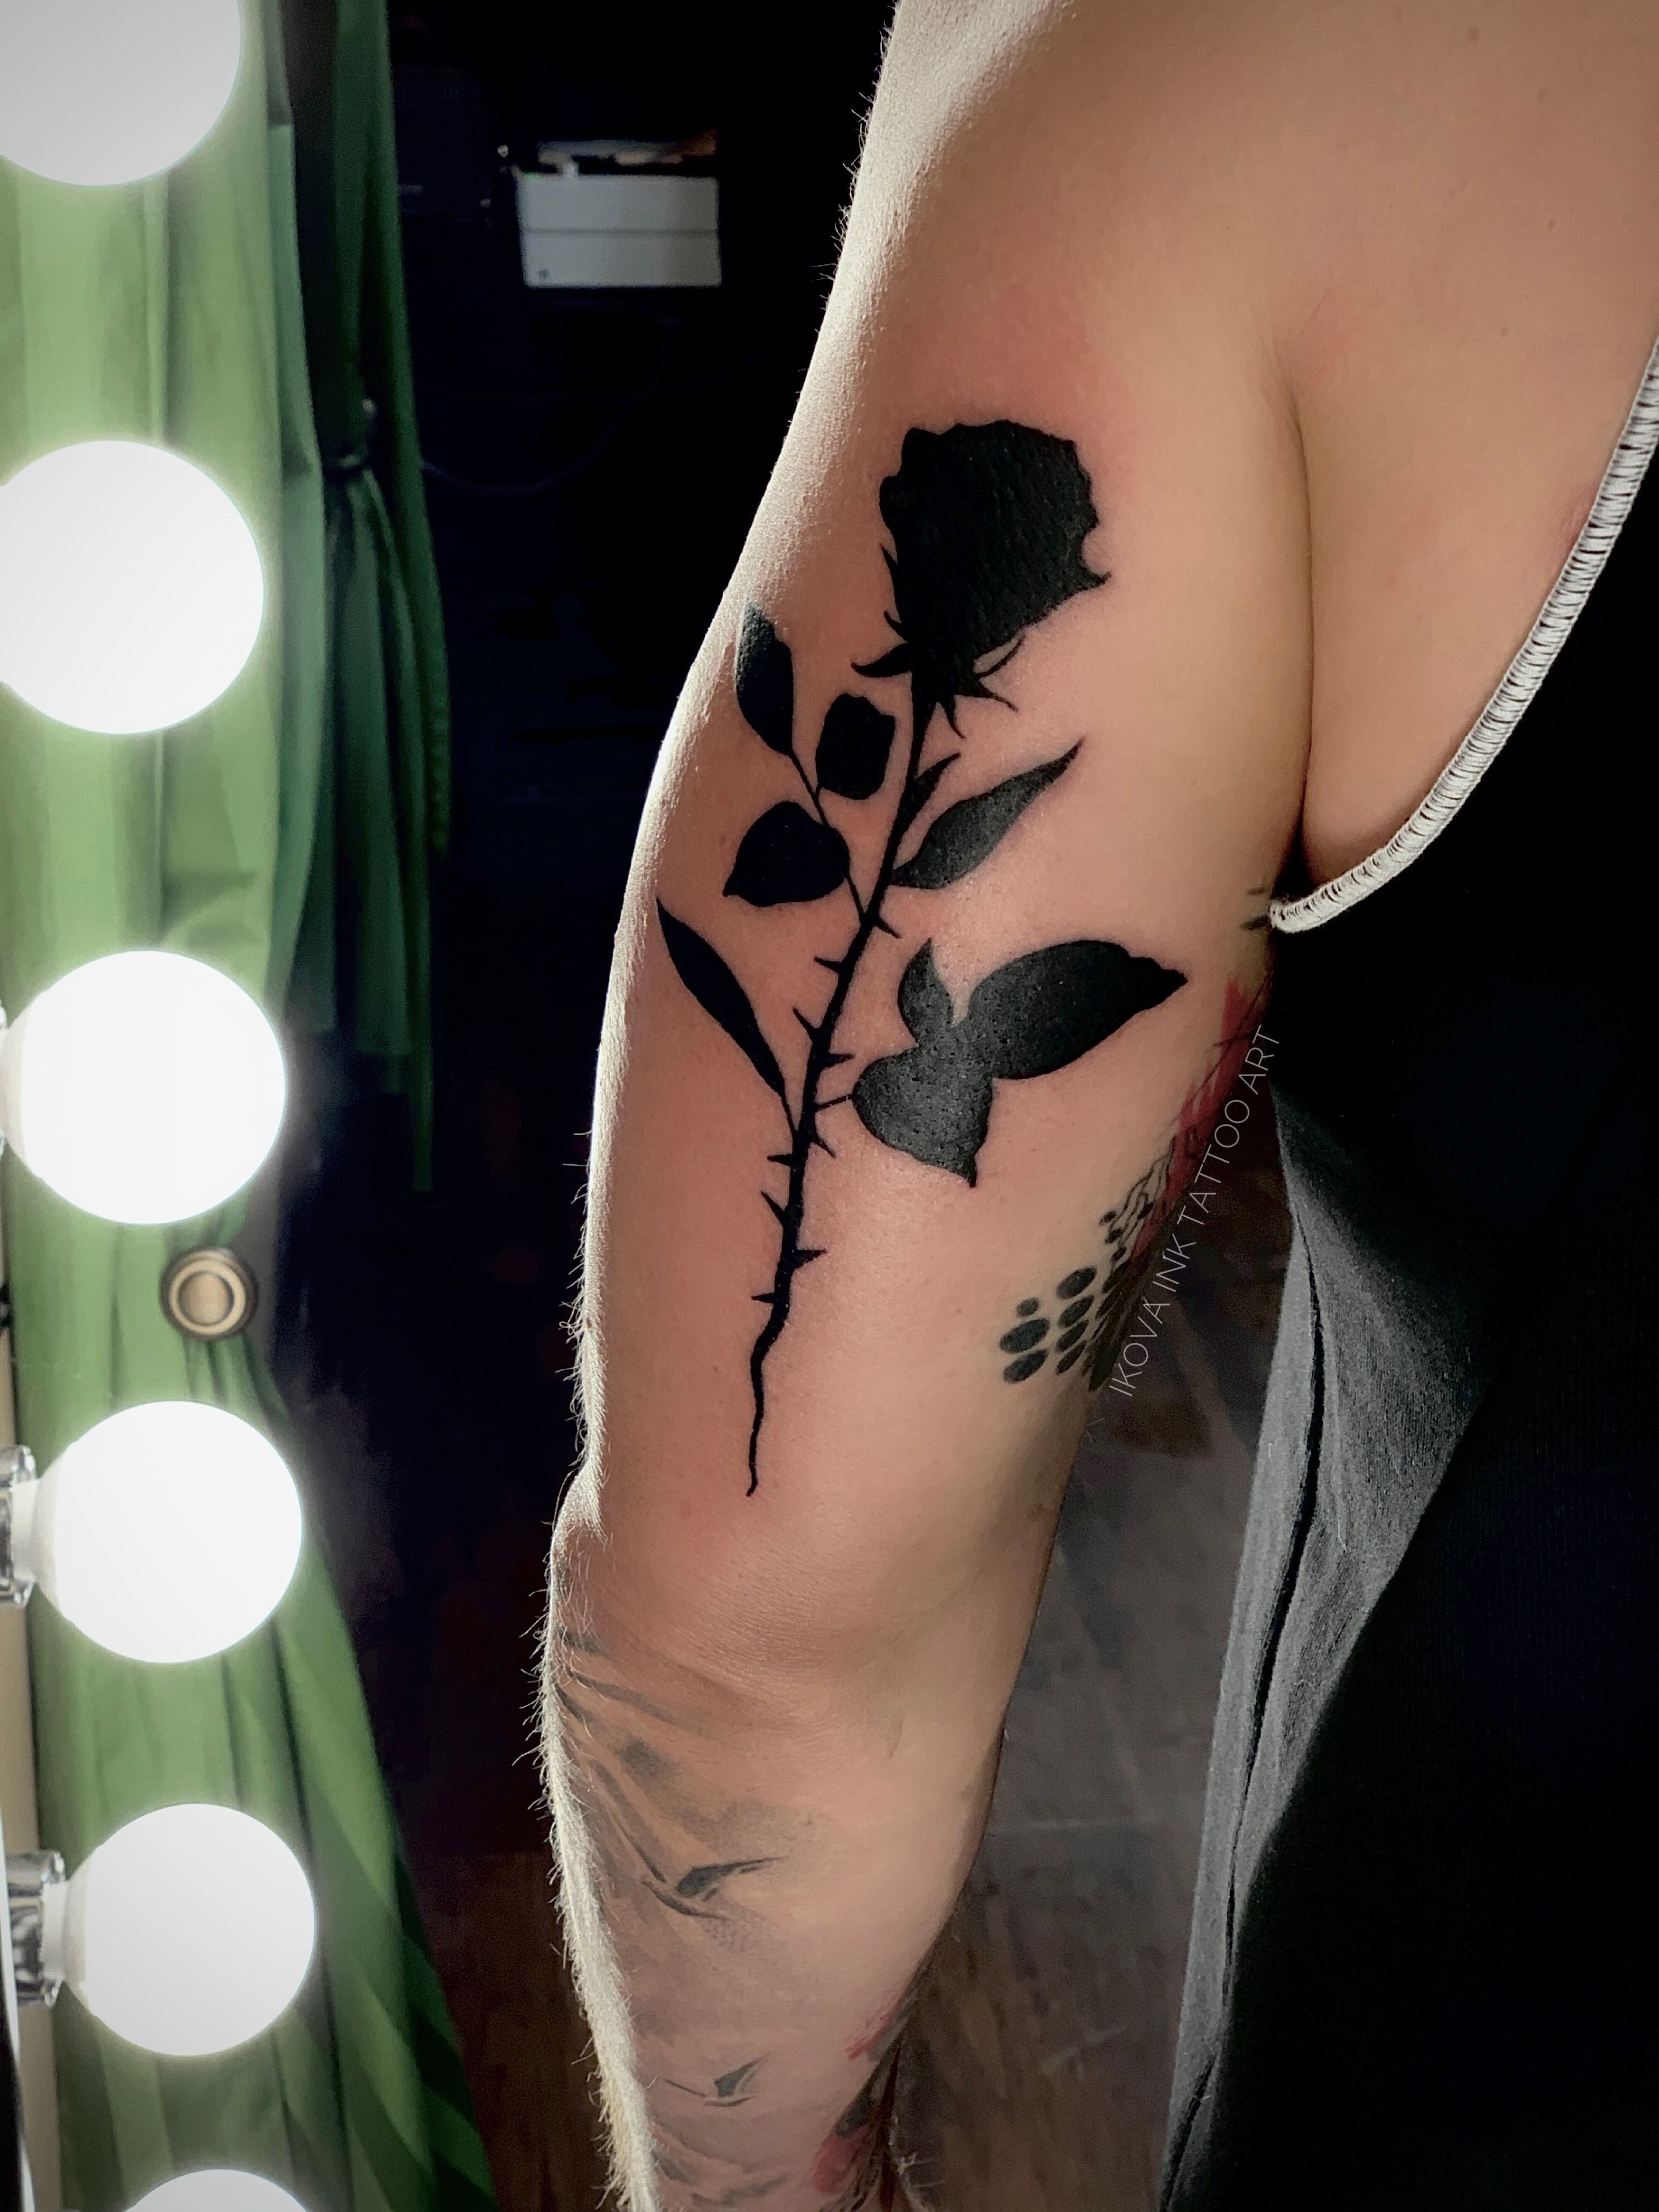 Tattoo uploaded by Ikova tattoo studio • Silhouette tattoo • Tattoodo